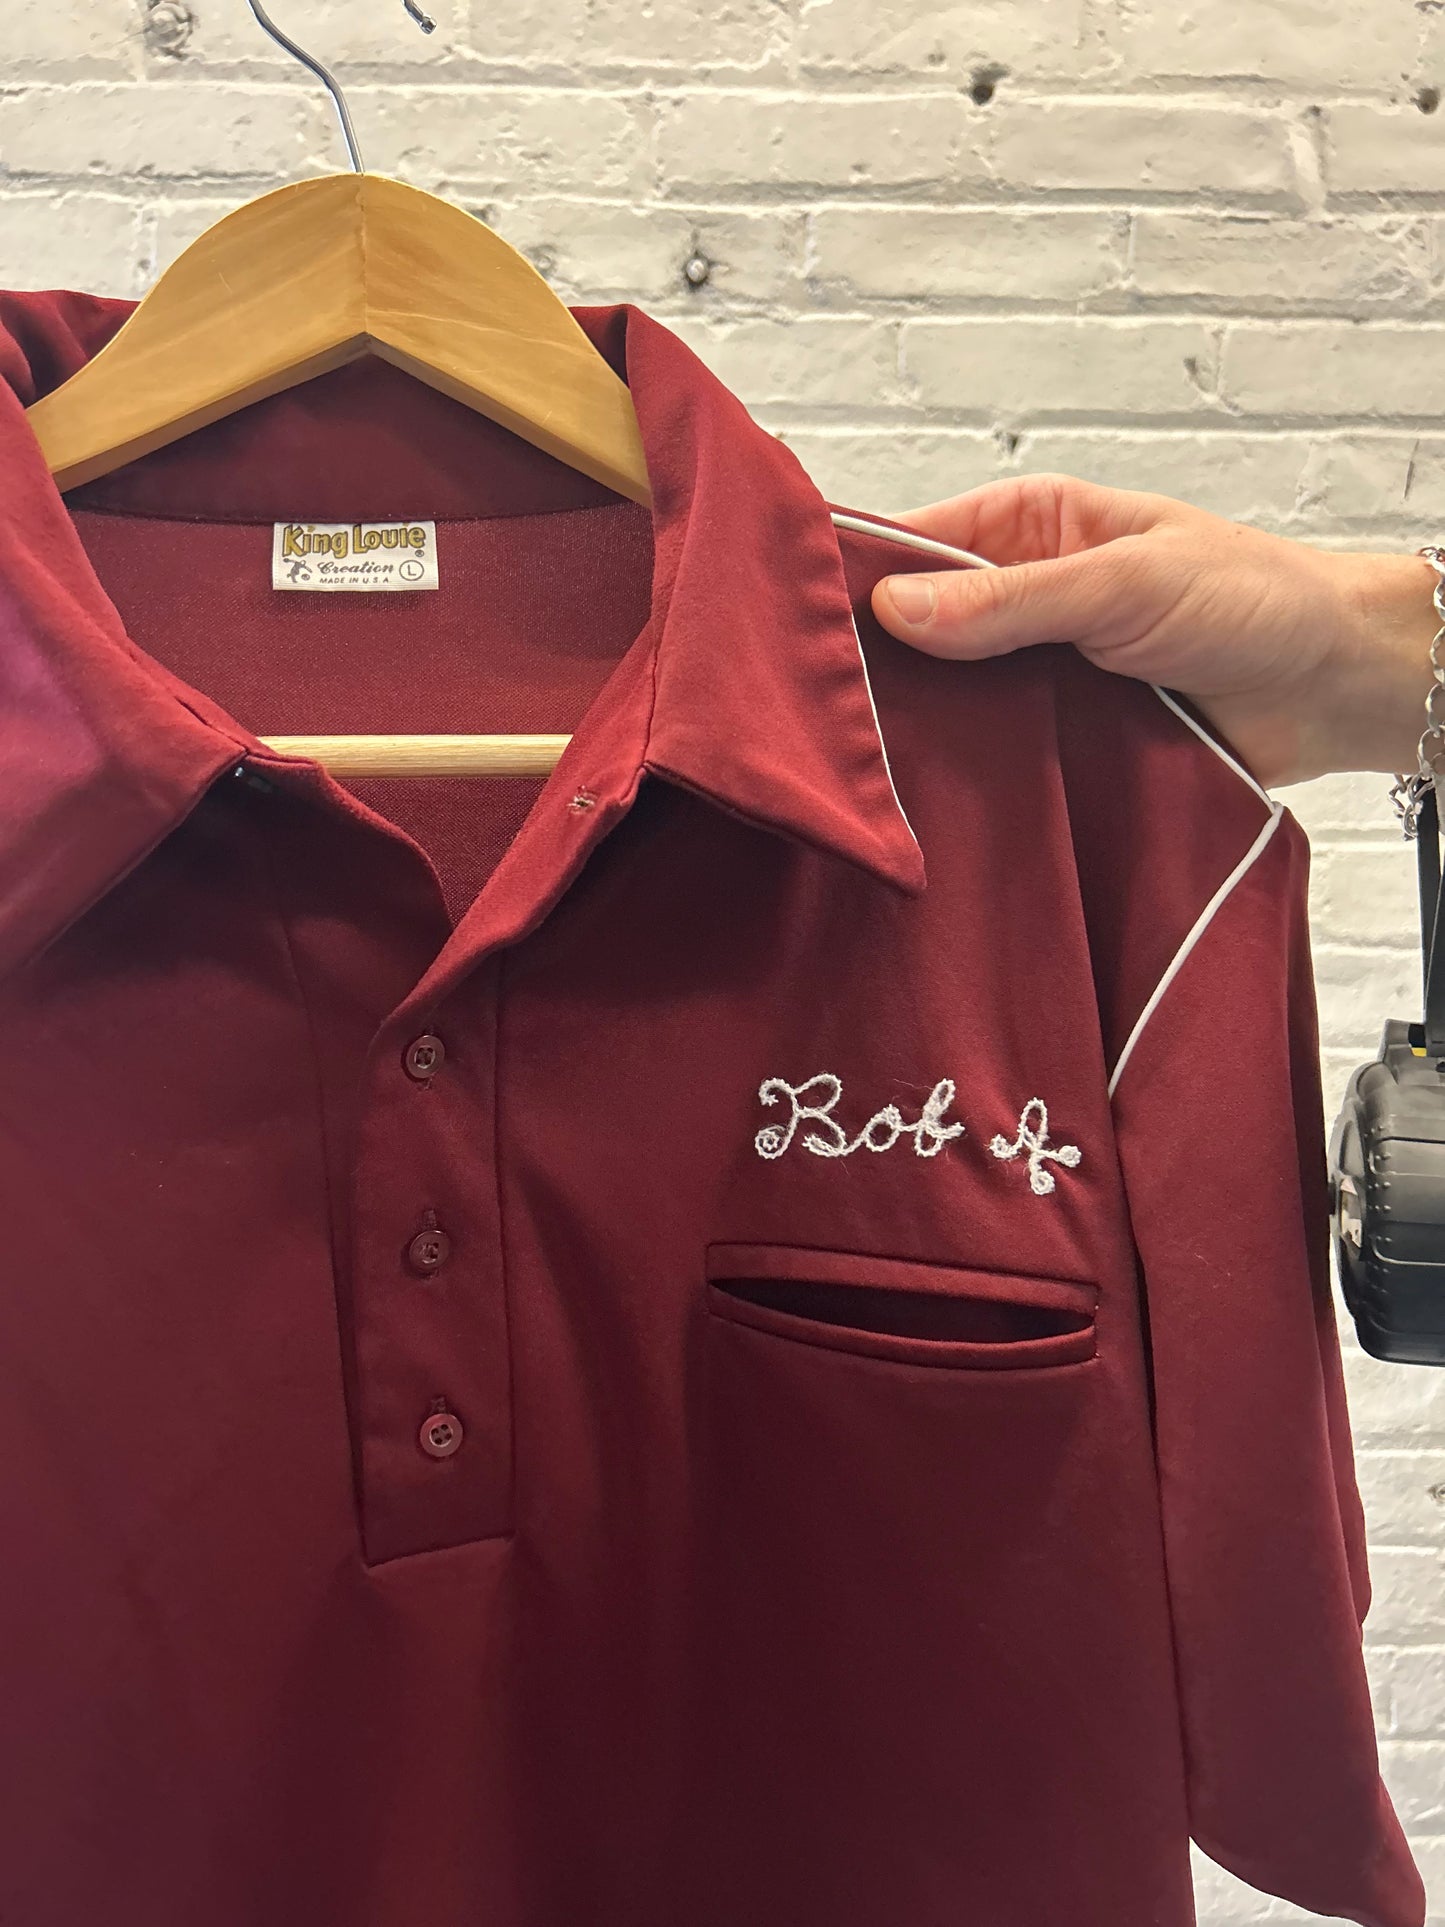 Bob Maroon Bowling Shirt - Large